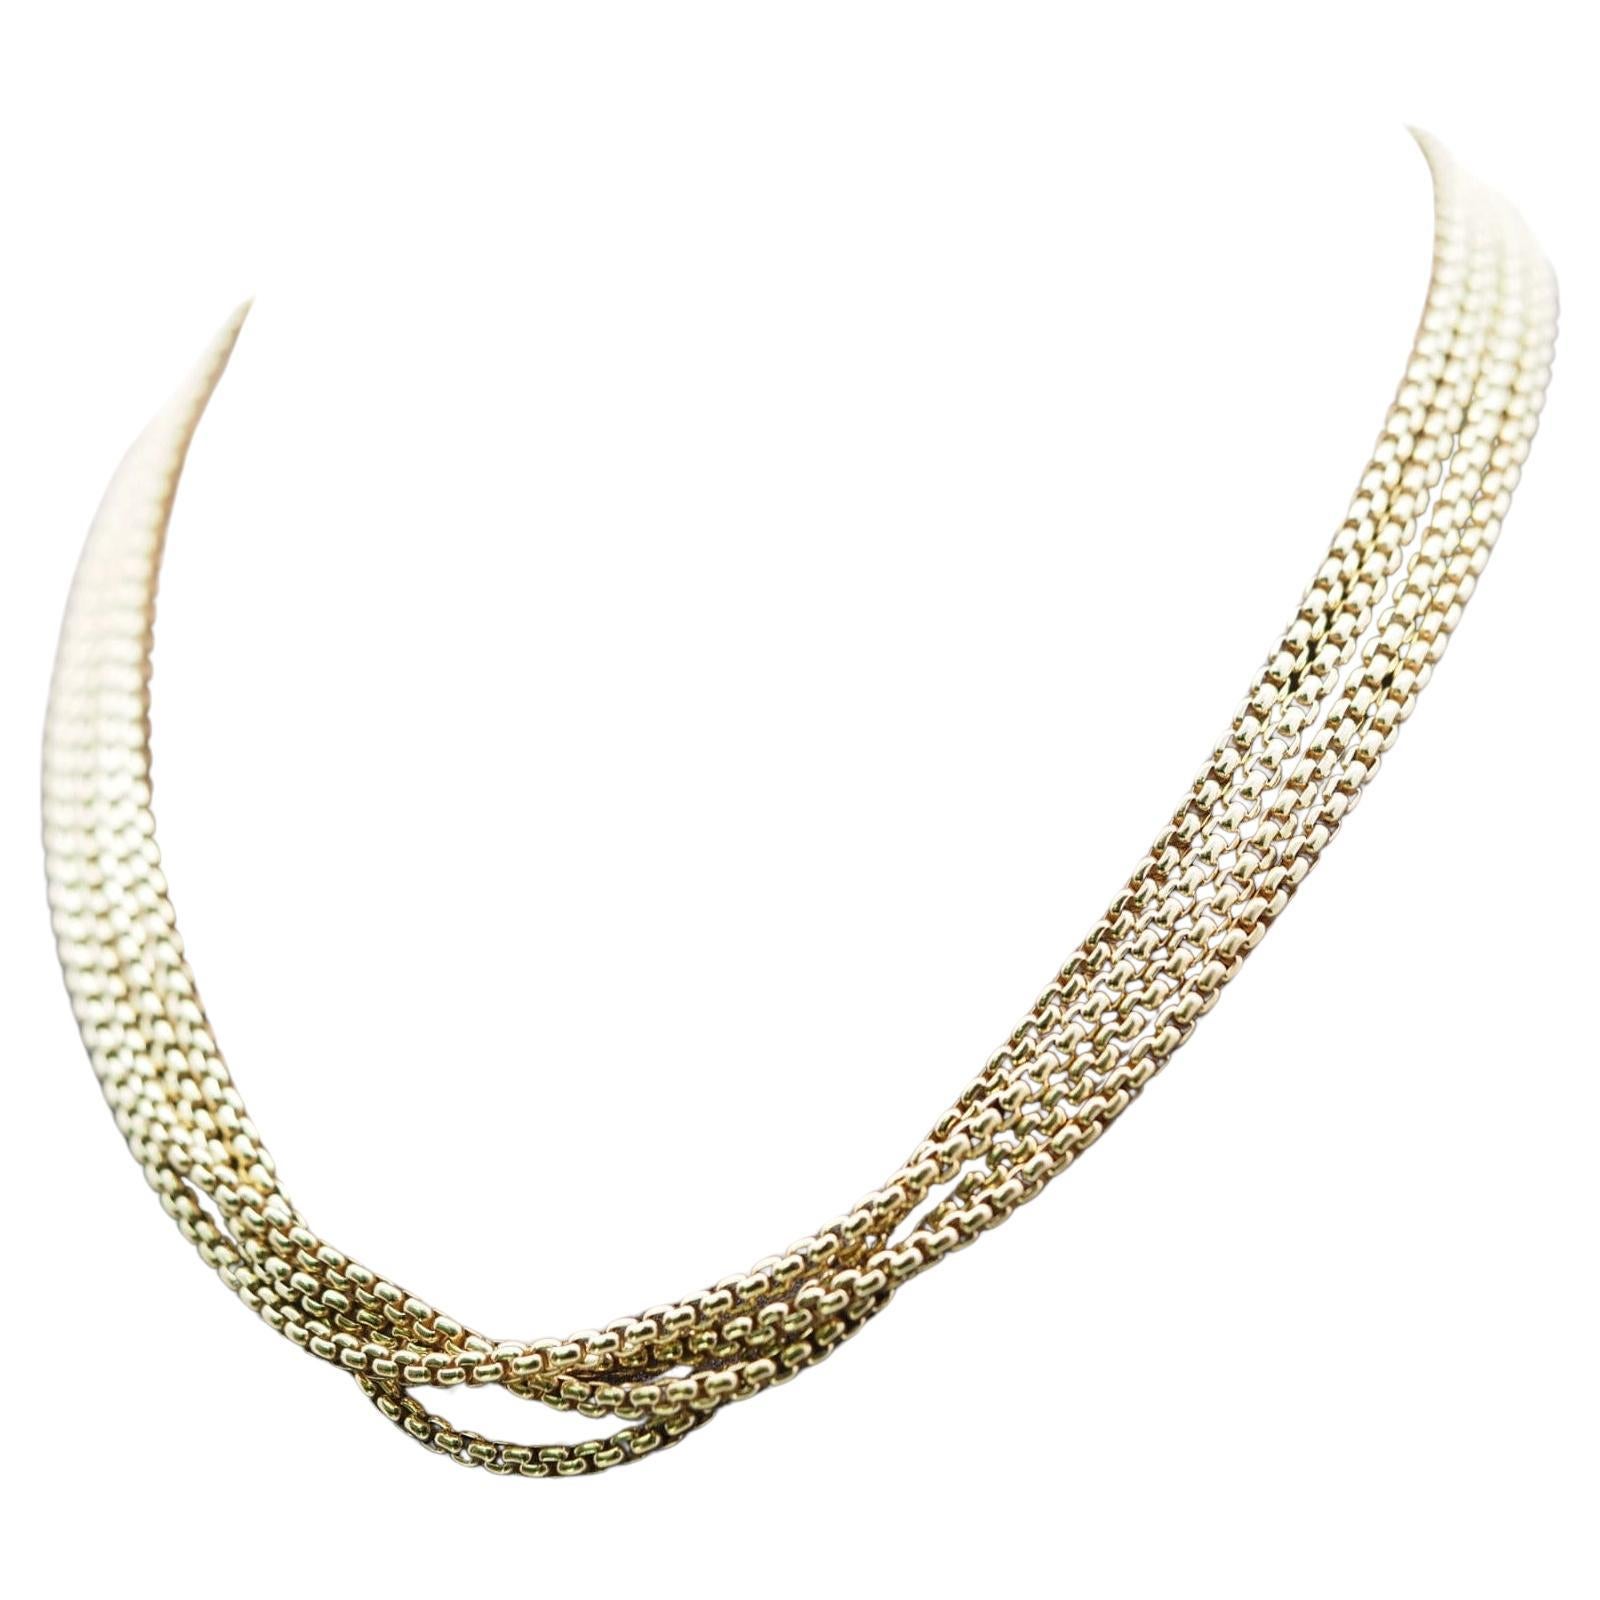 David Yurman Gold Multi Chain Necklace in 18 Karat Yellow Gold 15.5" RARE